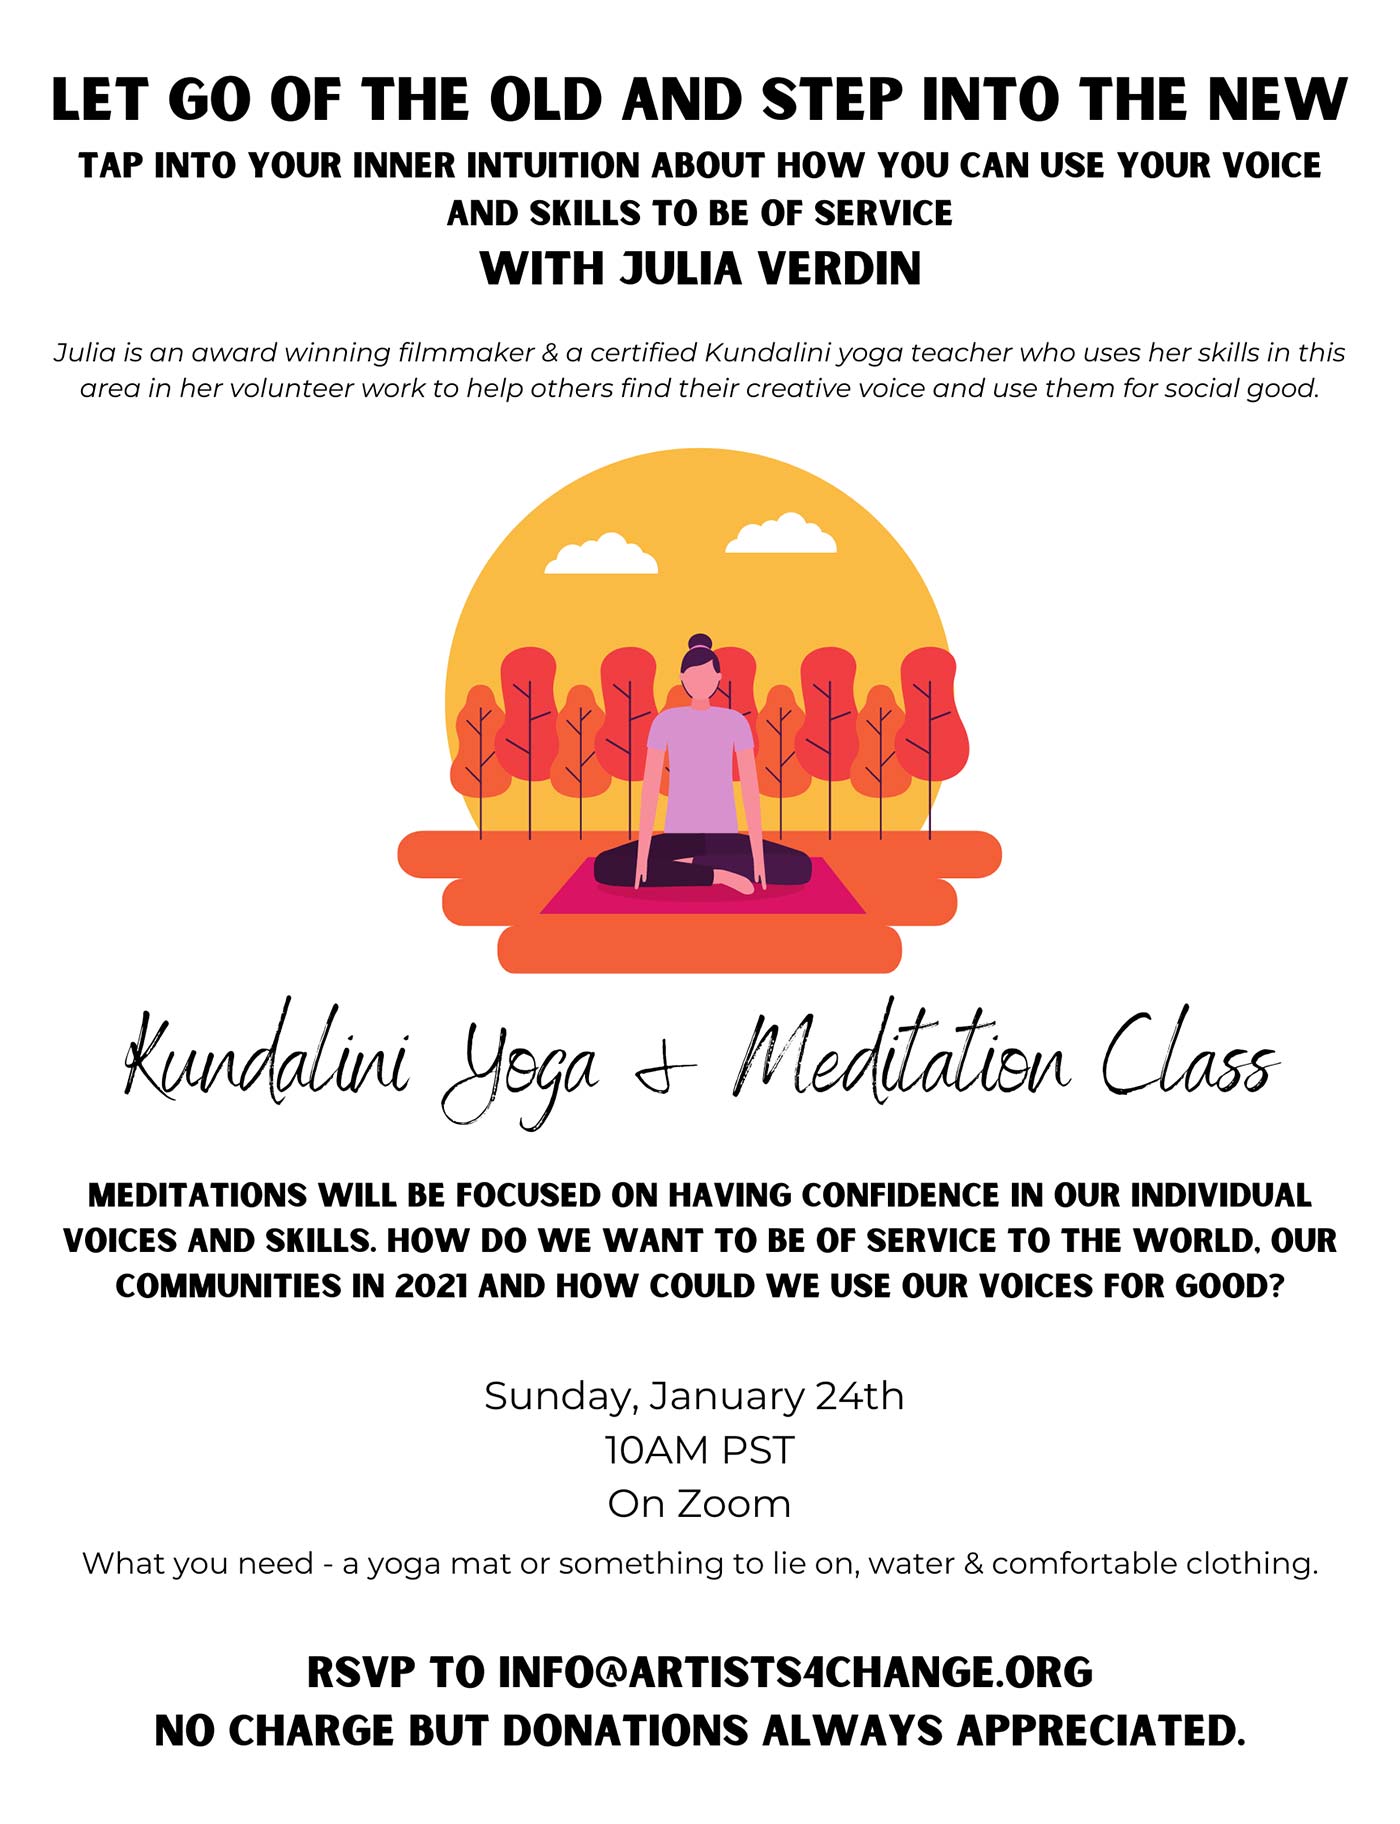 Kundalini Yoga & Meditation Class